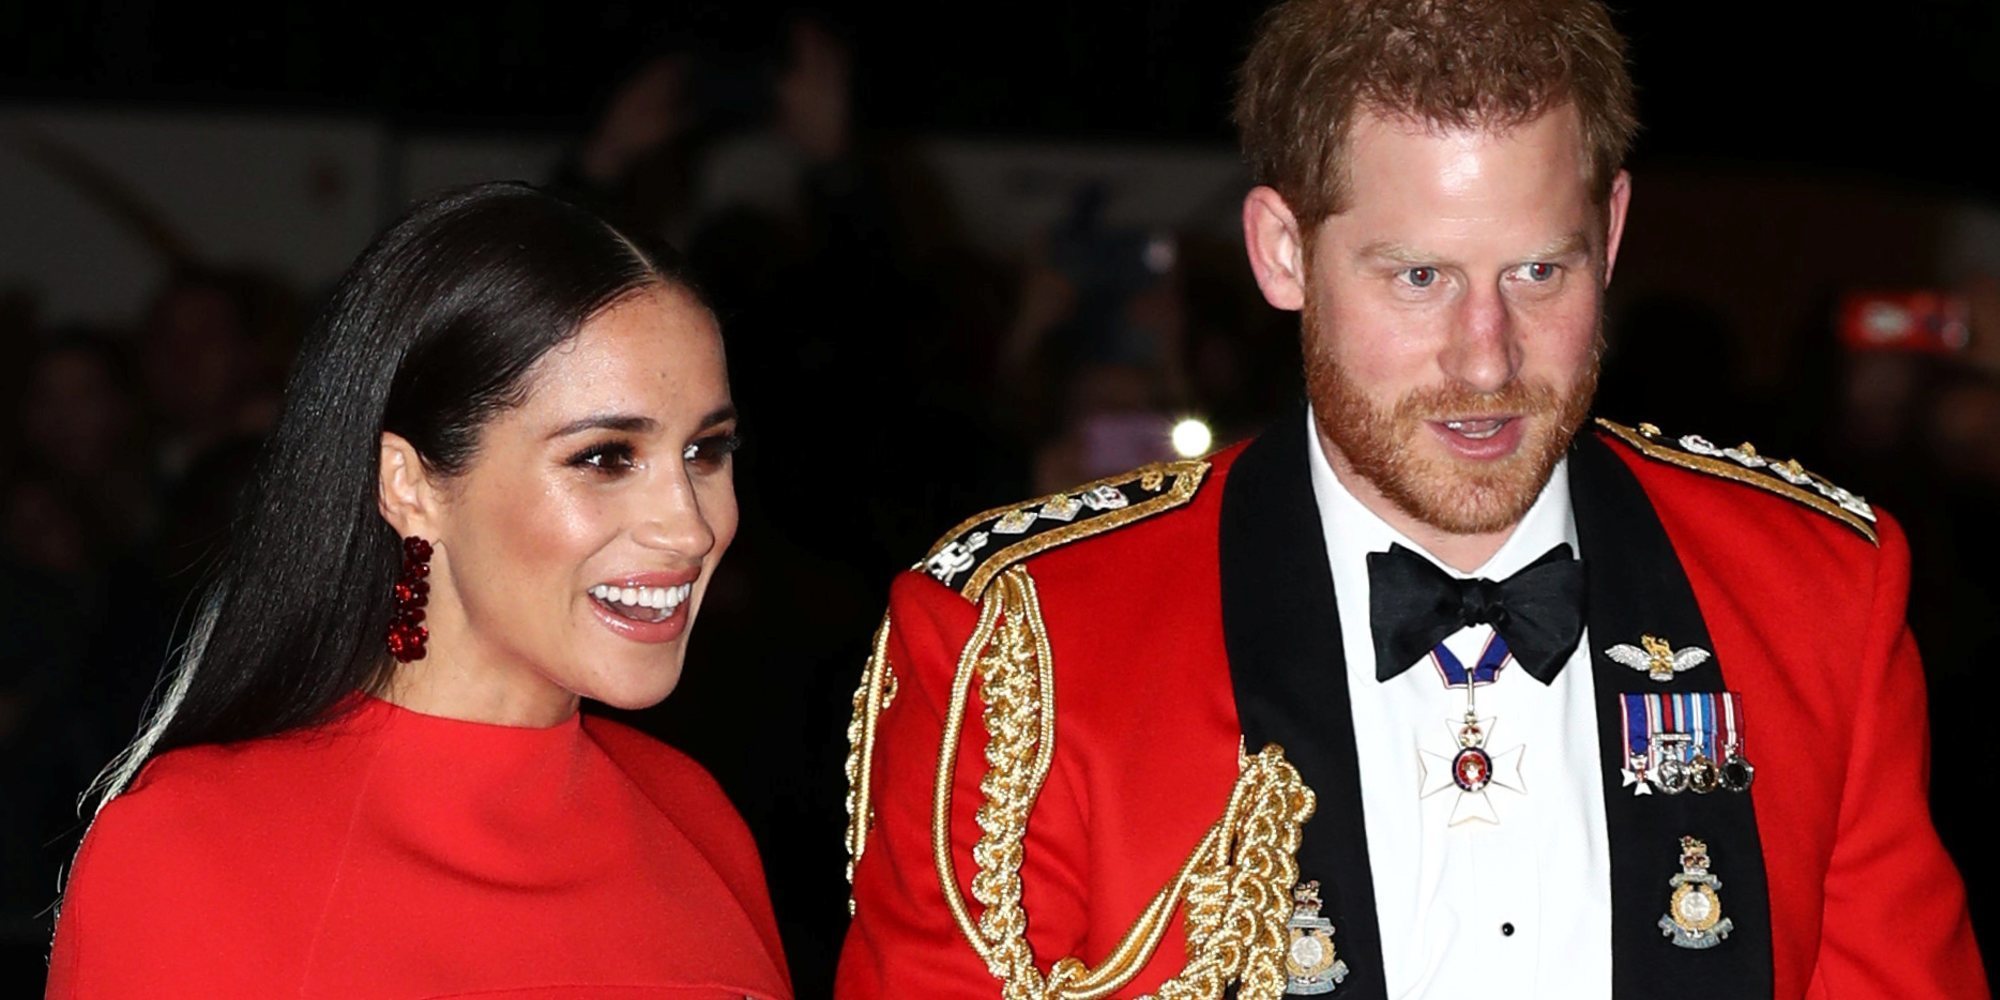 El Príncipe Harry y Meghan Markle acuden a su penúltimo evento oficial antes de su marcha de la Familia Real